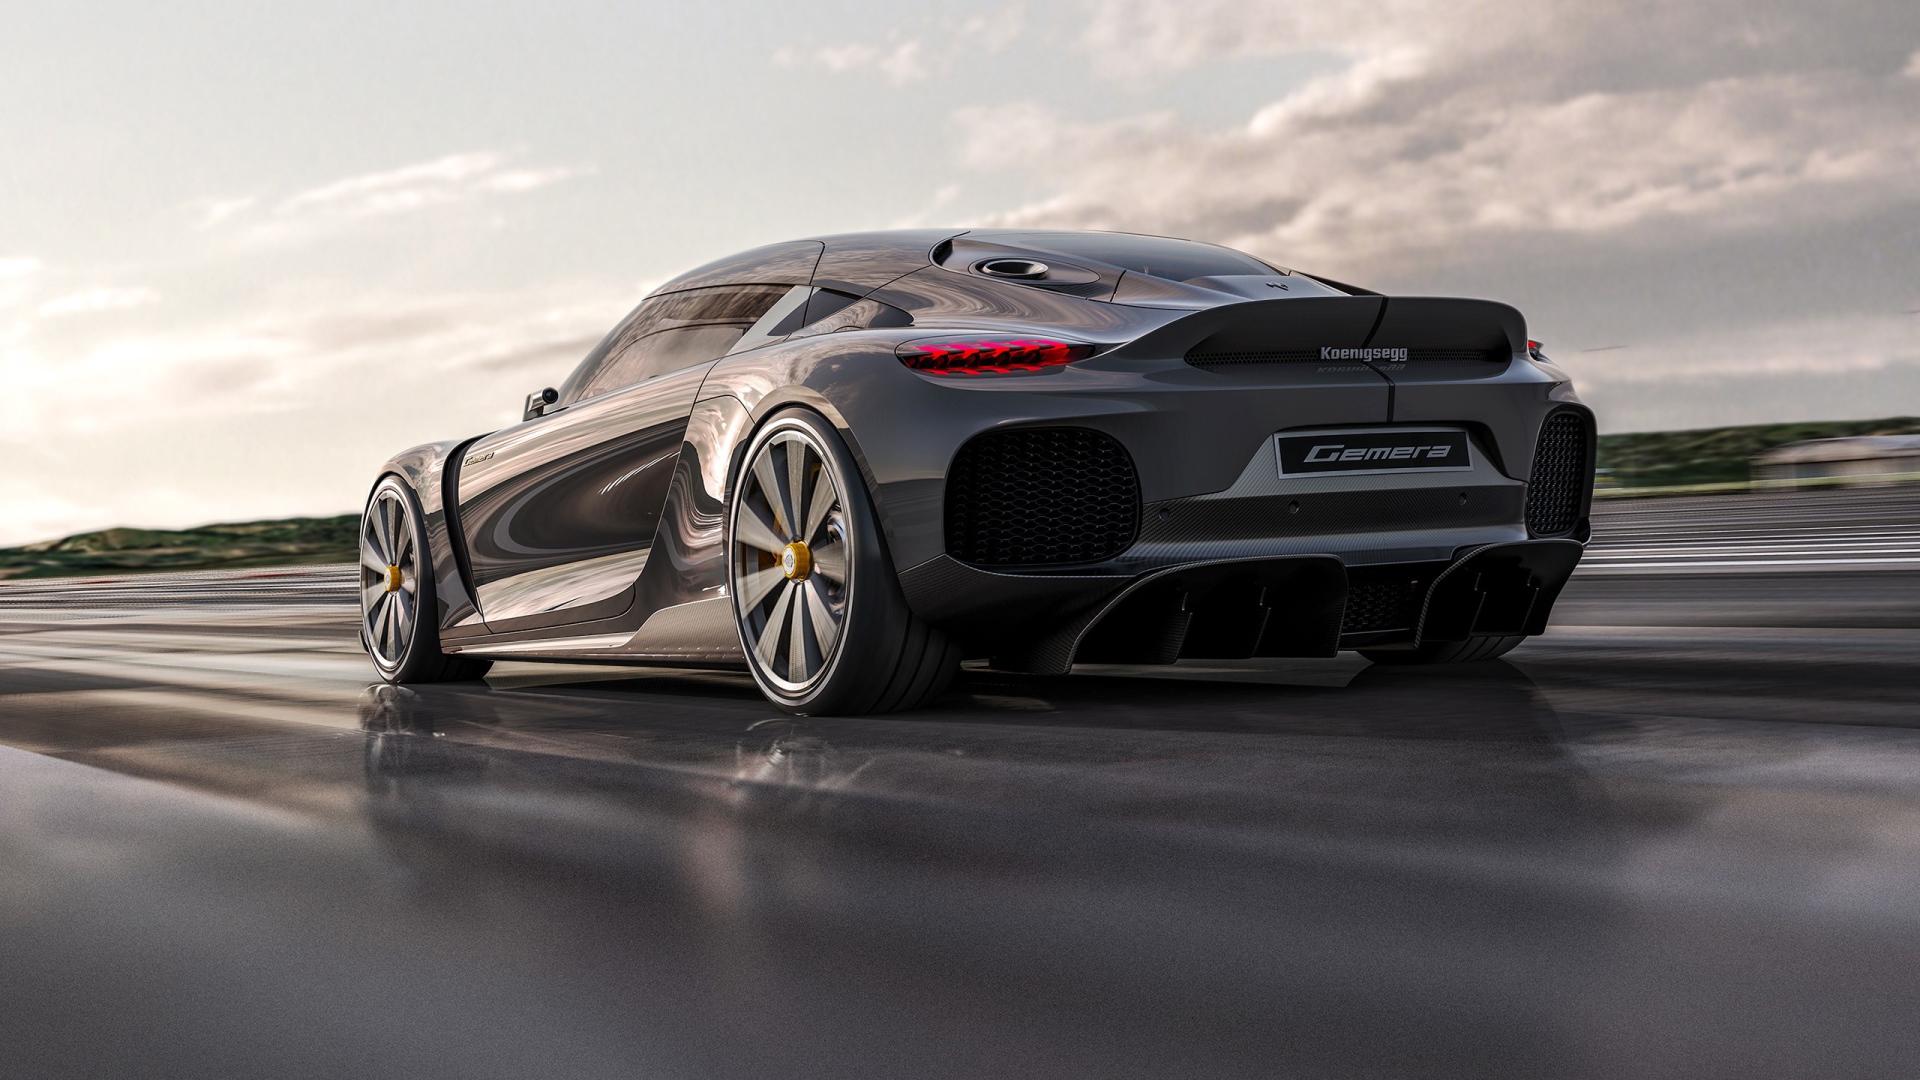 Быстрый автомобиль Koenigsegg Gemera 2020 года на трассе вид сзади